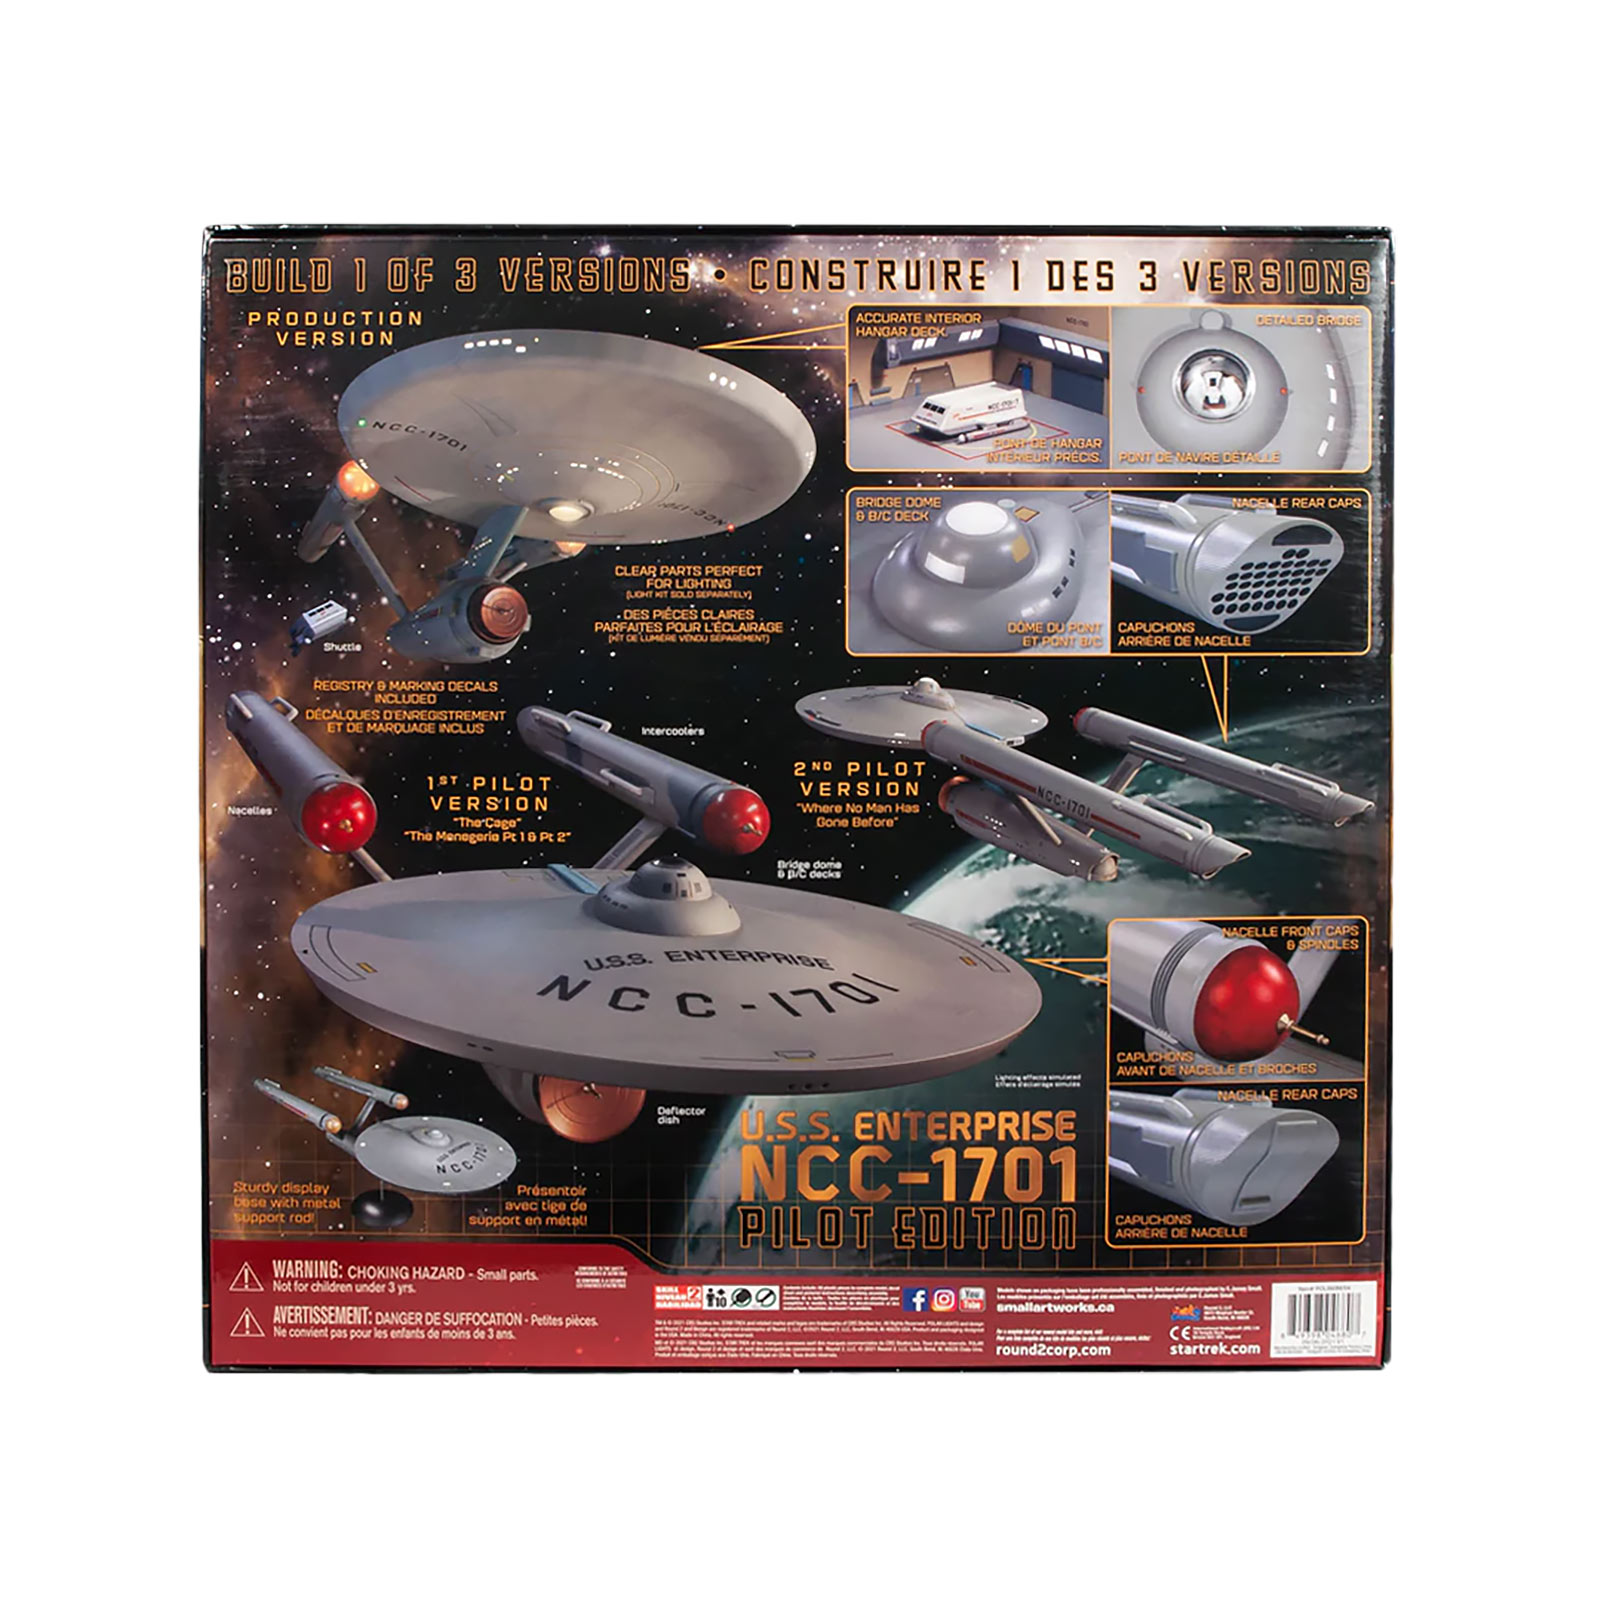 Star Trek - U.S.S. Enterprise Edition Pilote Kit de Modèle